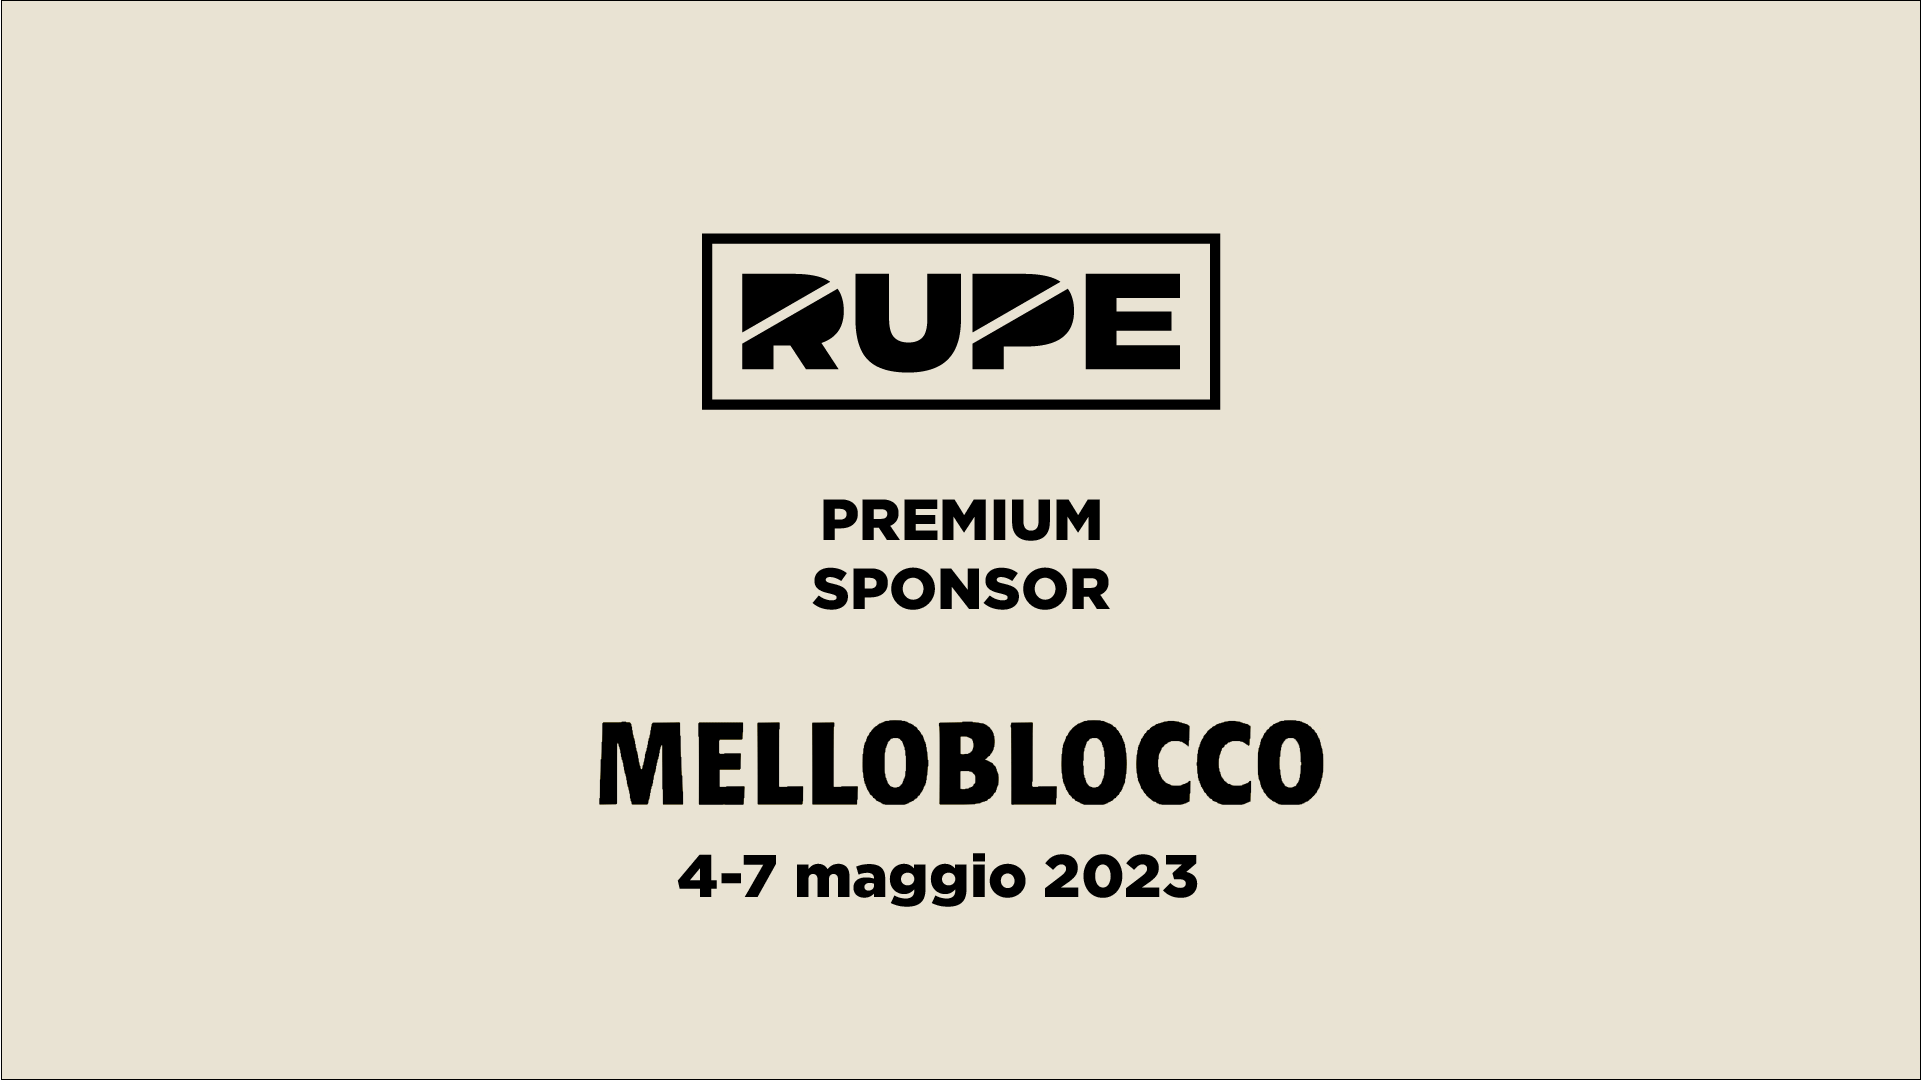 Rupe premium sponsor Melloblocco 2023